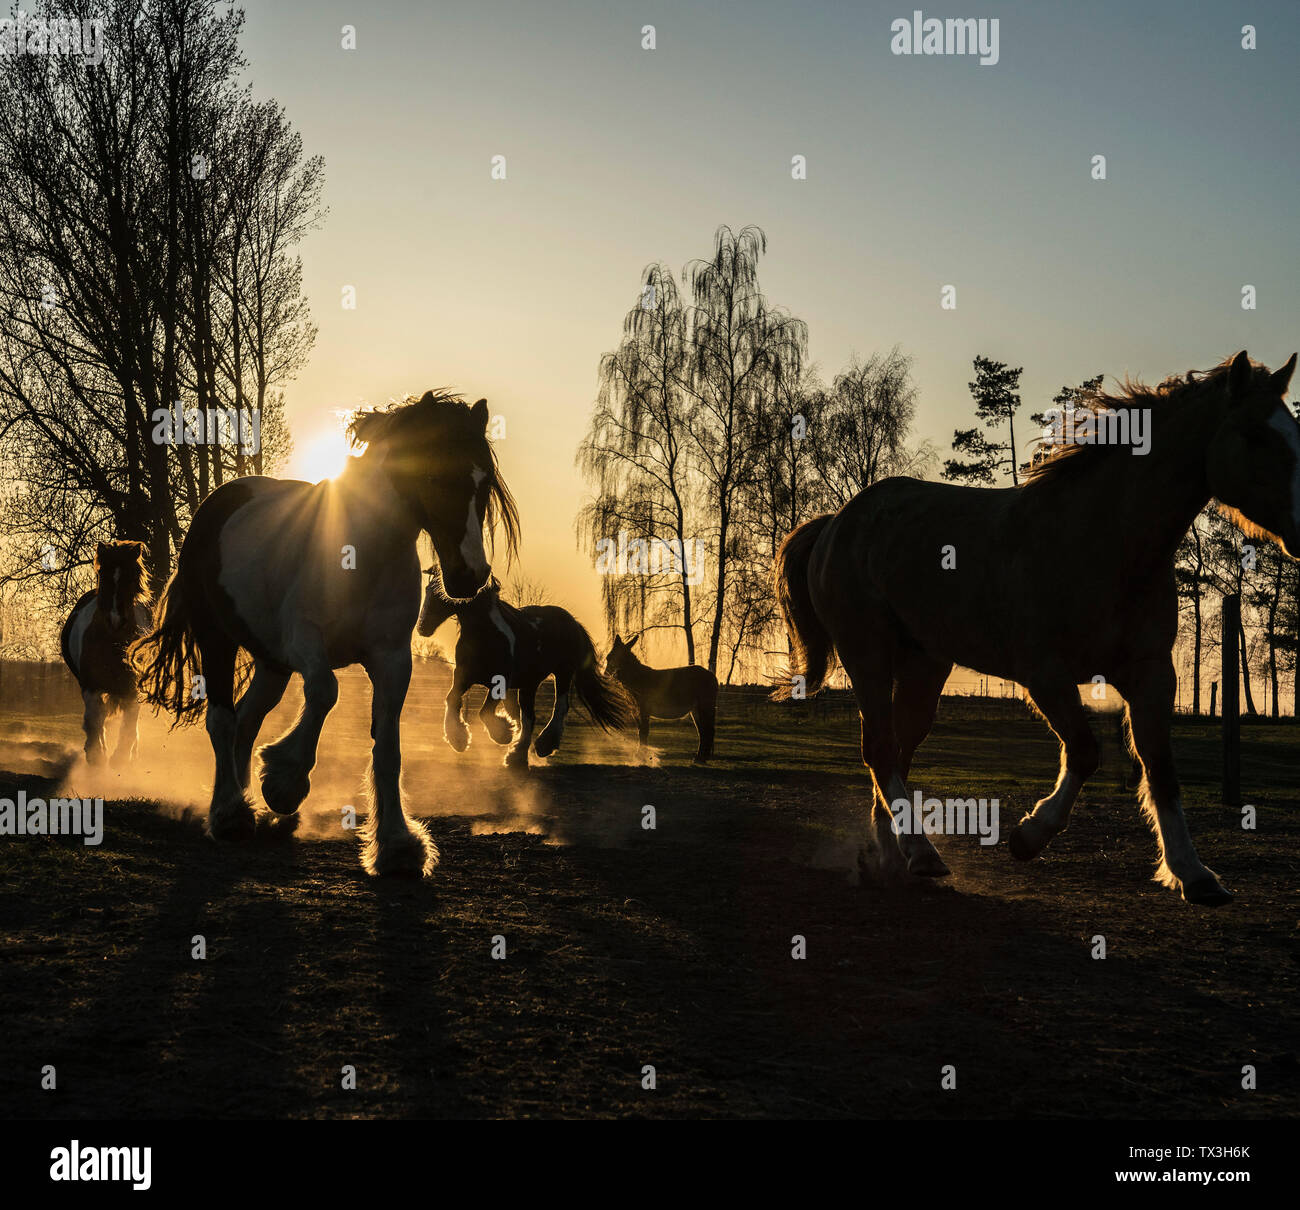 Chevaux qui courent dans les pâturages idylliques au coucher du soleil, Wiendorf, Berlin, Germany Banque D'Images